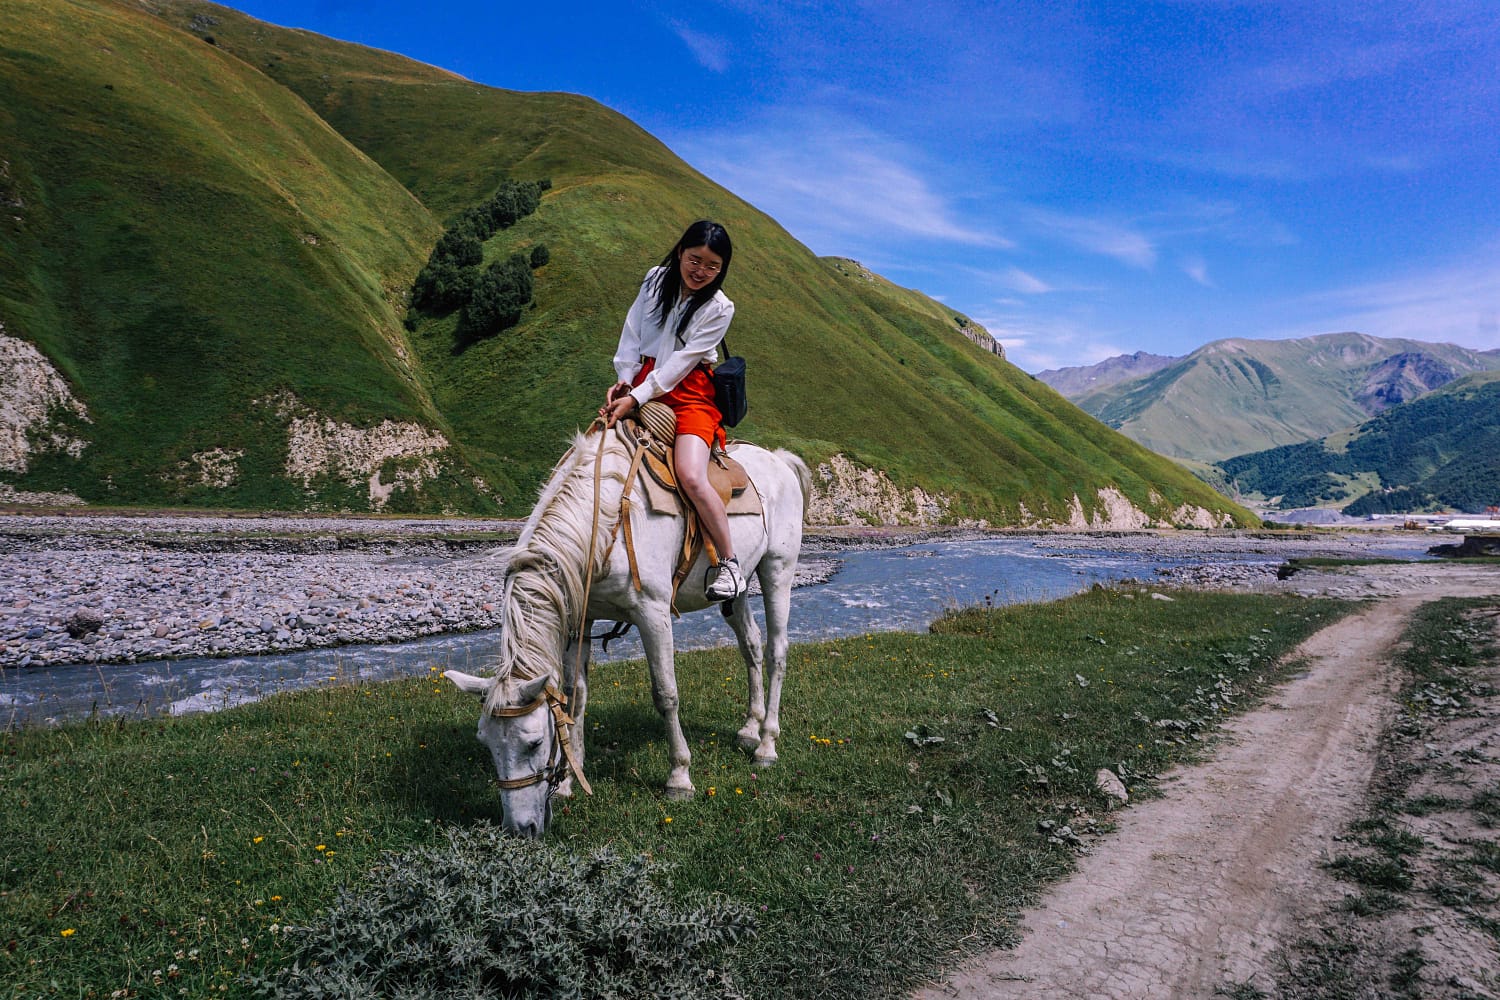 Horse riding tours in Kazbegi, Truso Valley, Caucasus mountains, Georgia country